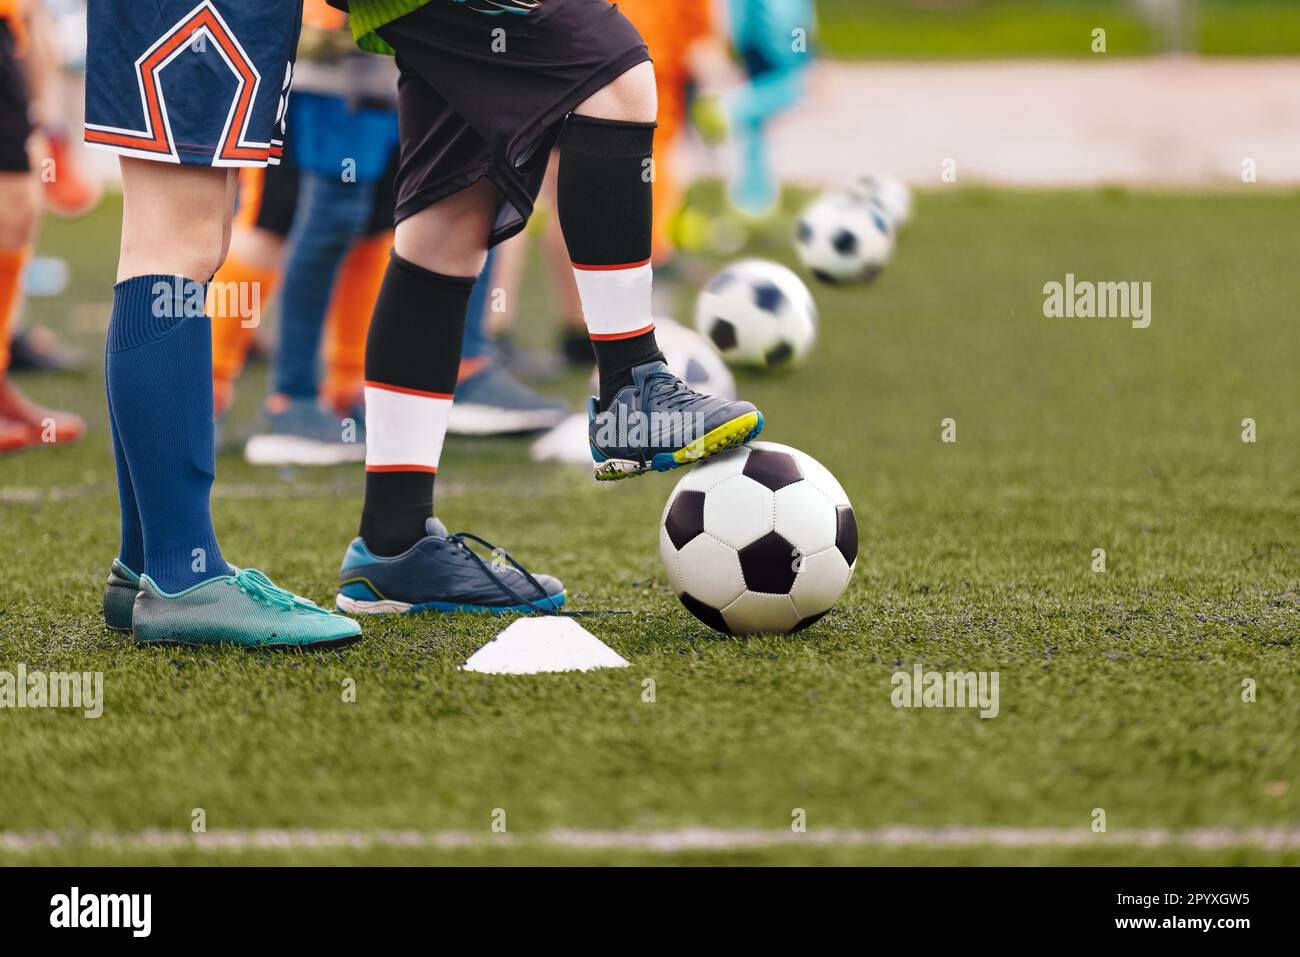 Cours d'entraînement de football pour les enfants. Bacilles de football. Jeu d'entraînement de football joueurs de football avec football balls.jpg Banque D'Images